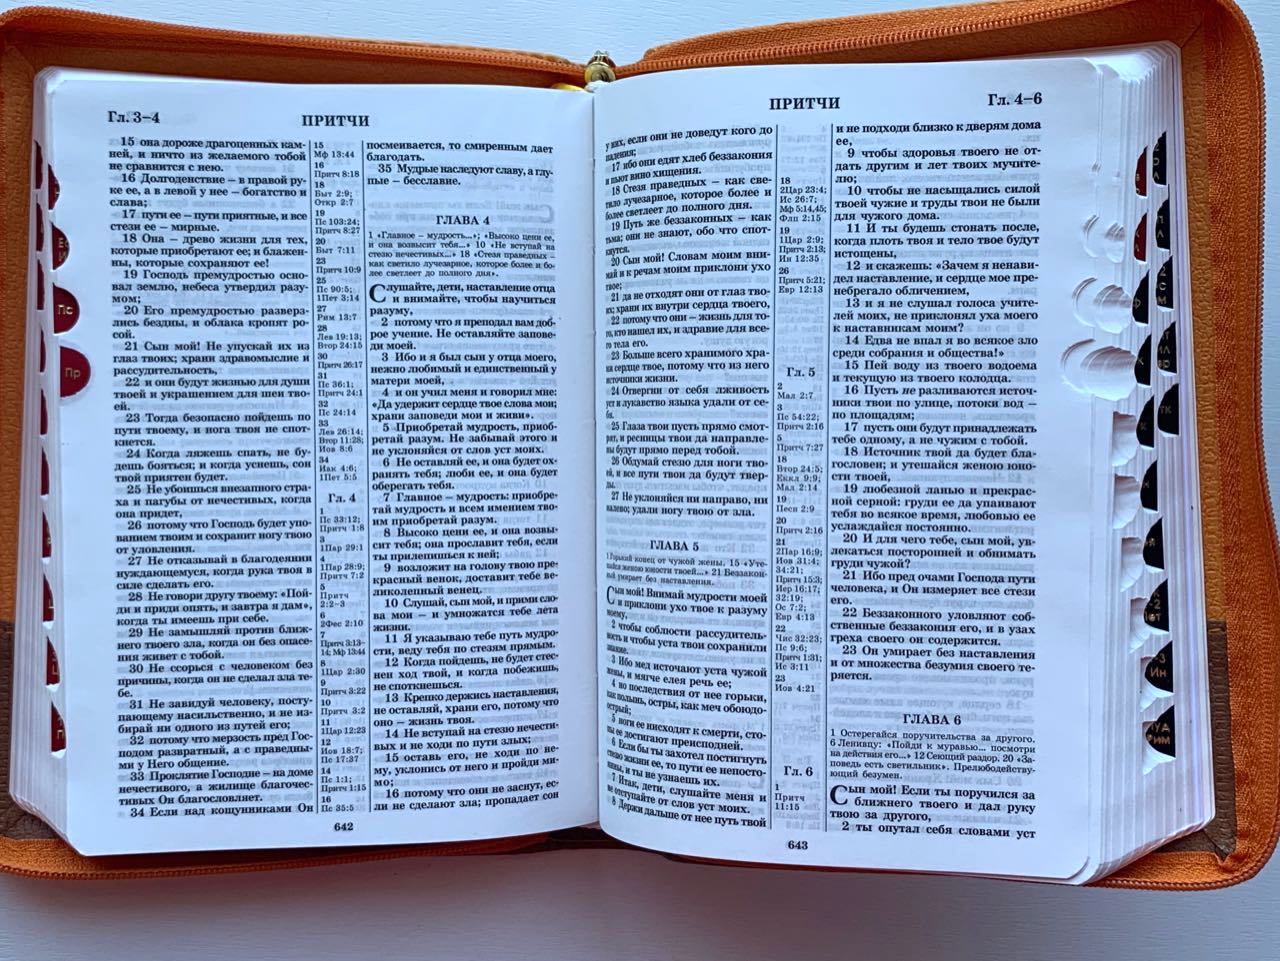 БИБЛИЯ 046zti формат, переплет из искусственной кожи на молнии с индексами, термо орнамент из узоров посредине и надпись "Библия", цвет светло-коричневый матовый, средний формат, 132*182 мм, цветные карты, шрифт 12 кегель